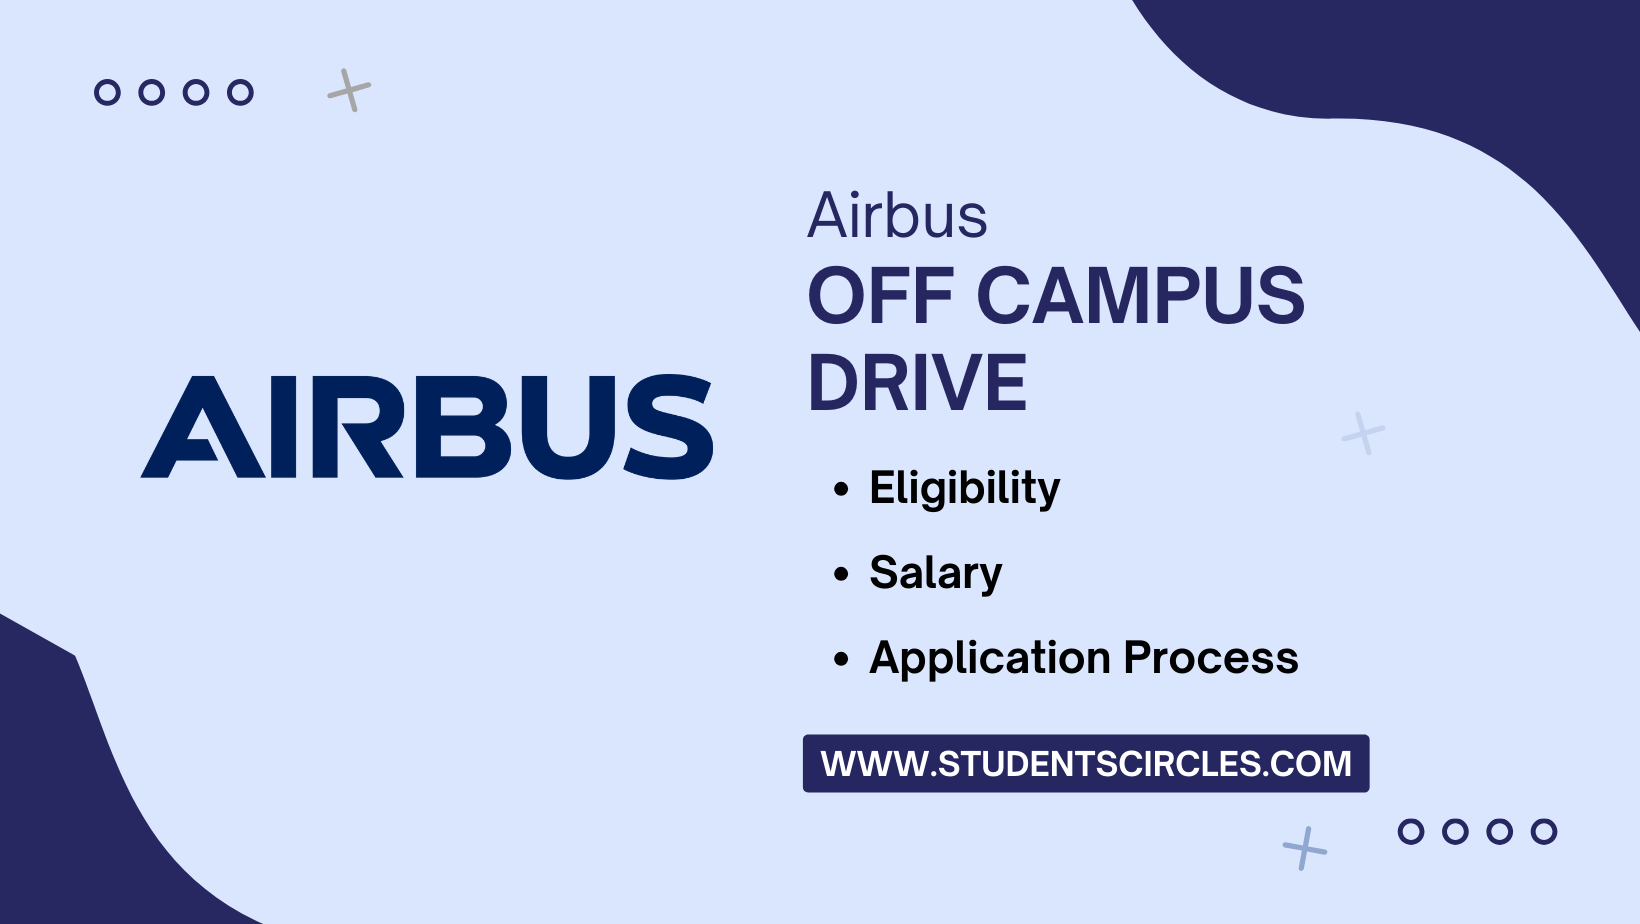 Airbus Off Campus Drive